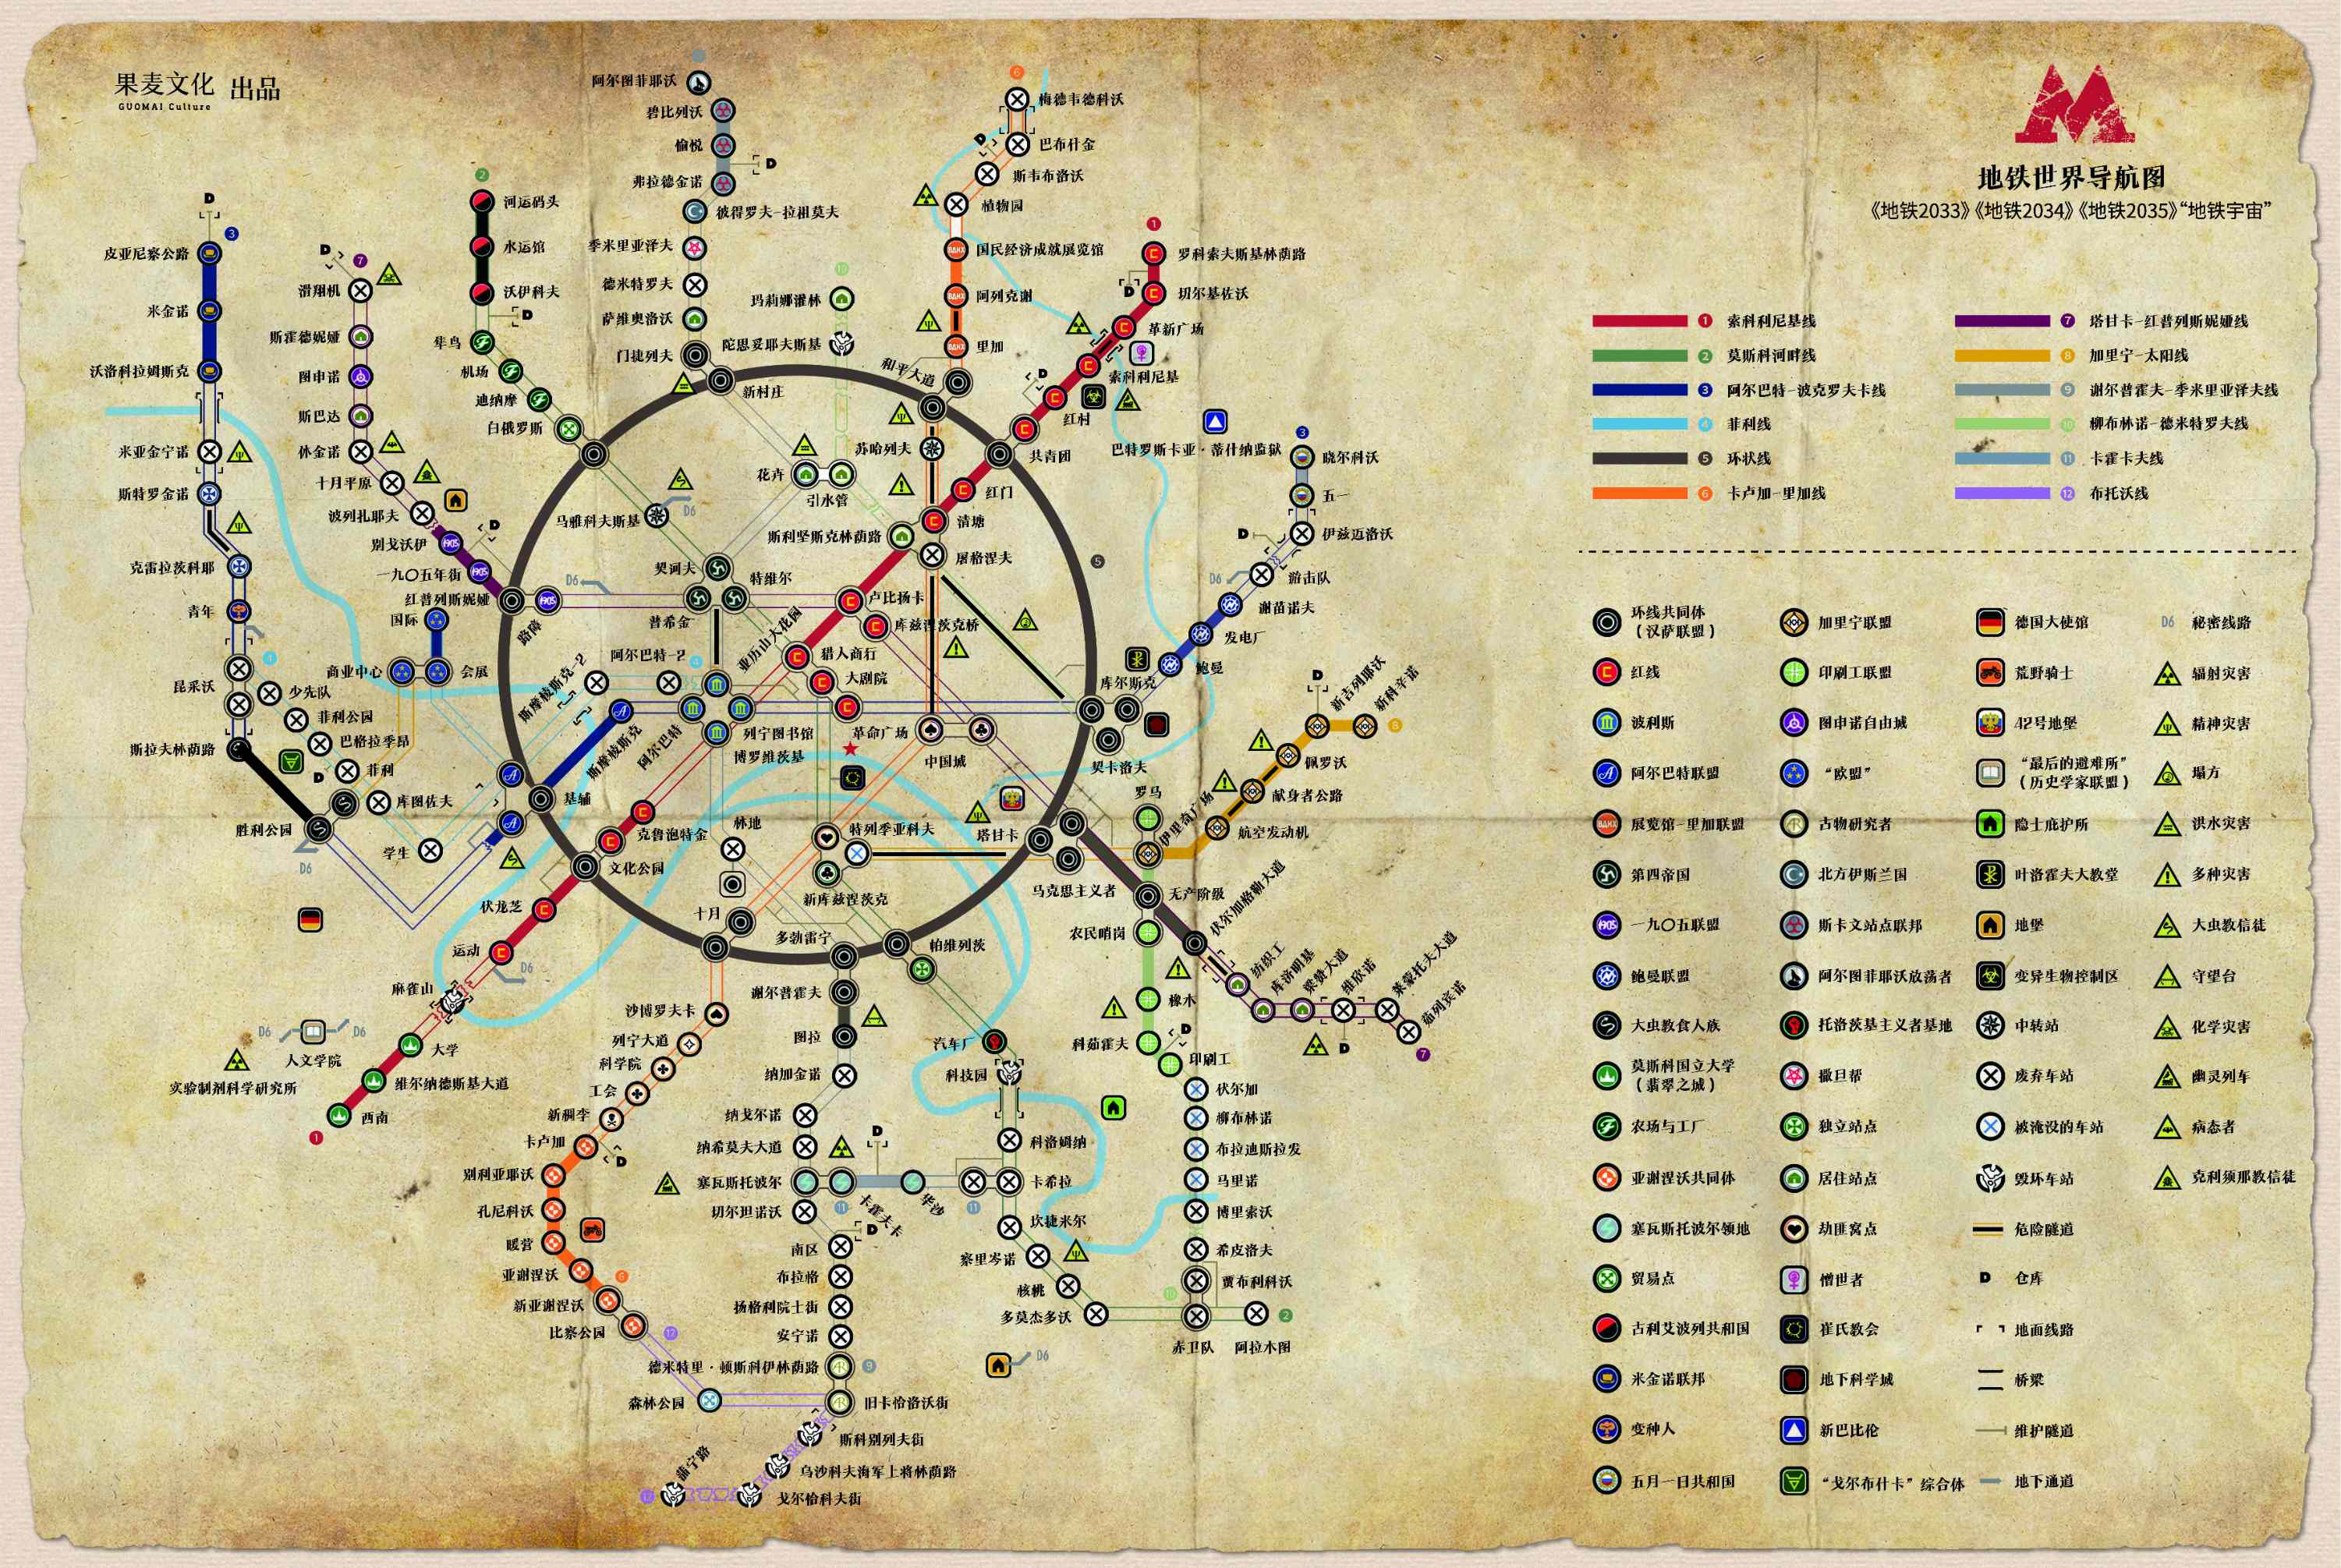 地铁世界导航图.jpg